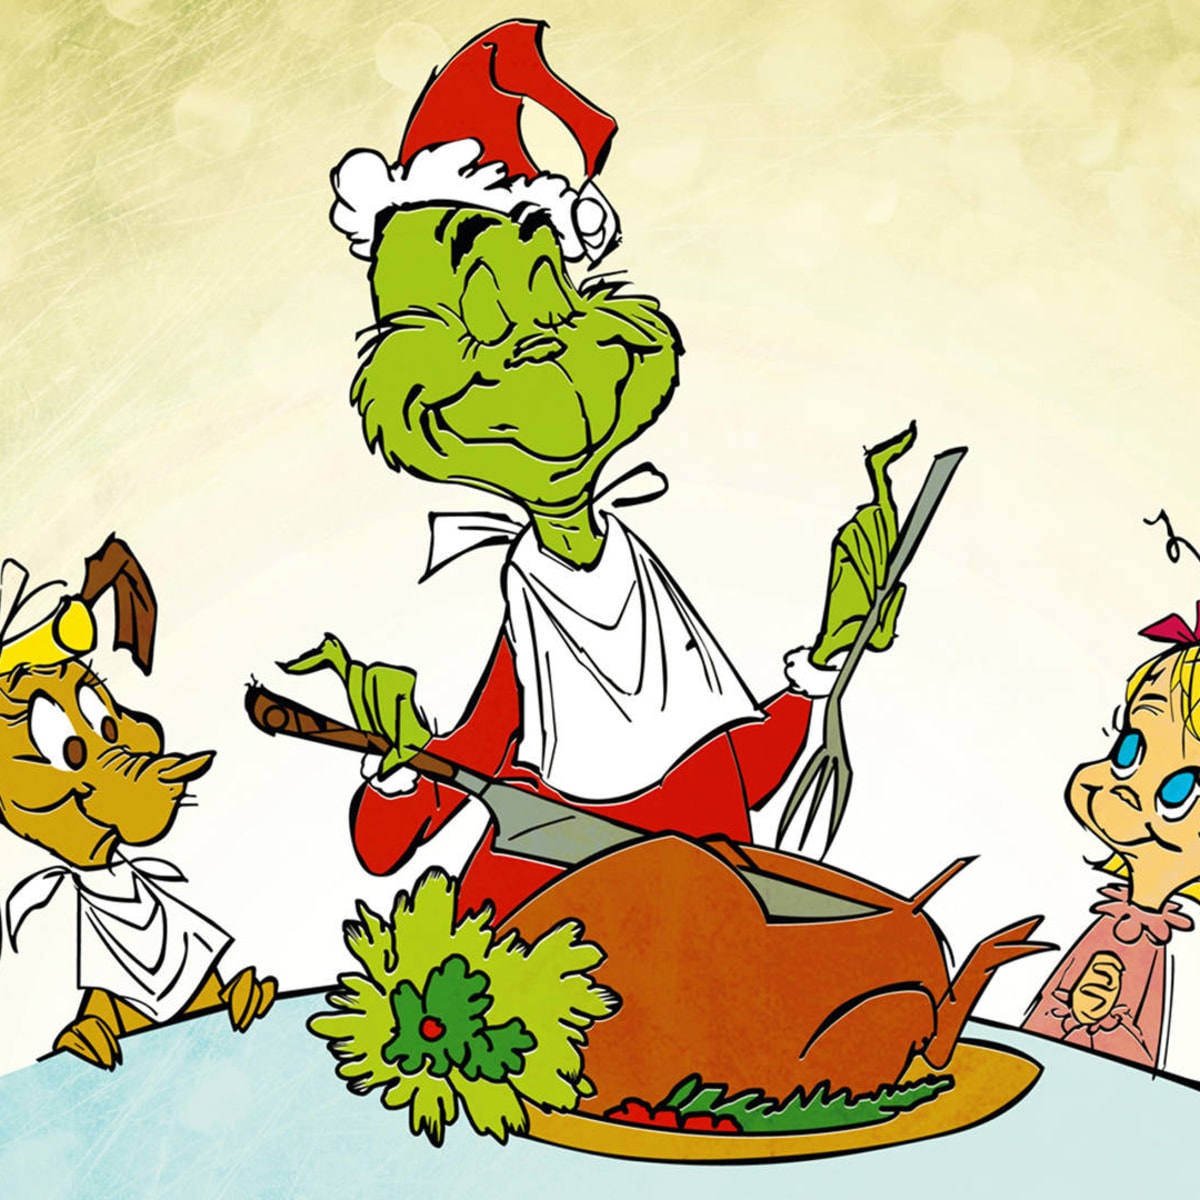 Dr. Seuss's How the Grinch Stole Christmas!™ Feelin' Grinchy